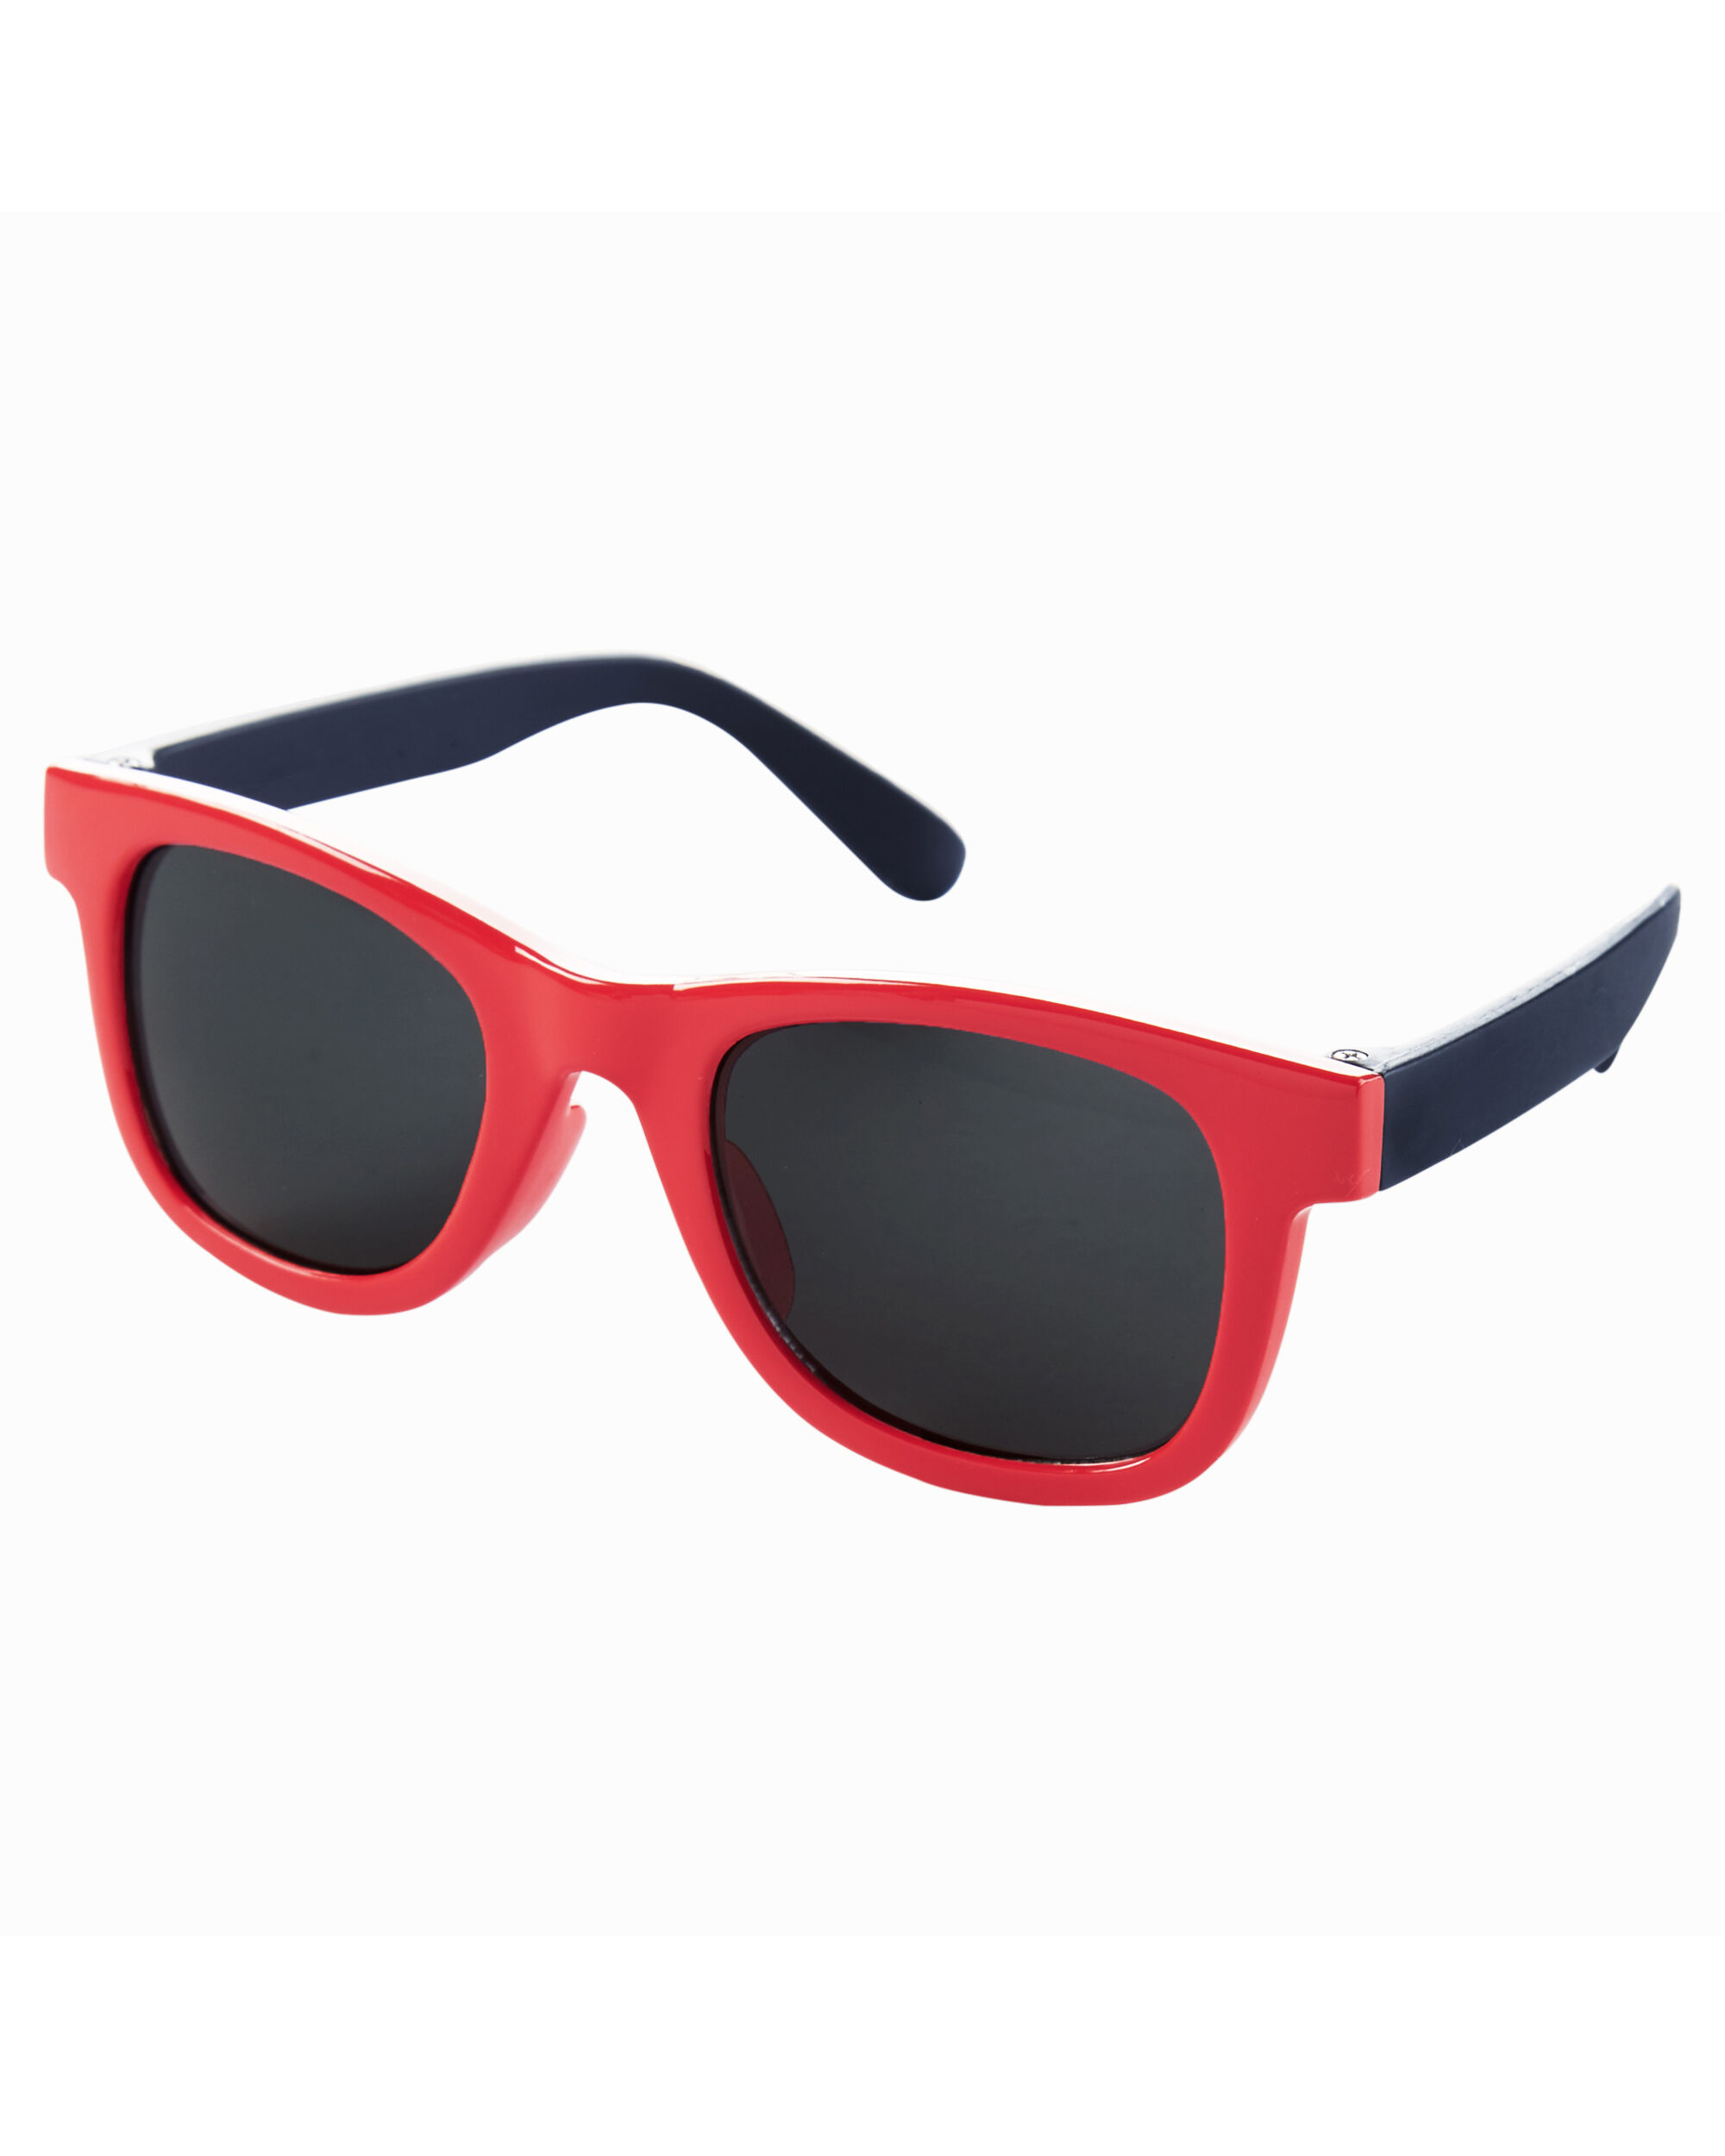 Sunglasses | carters.com